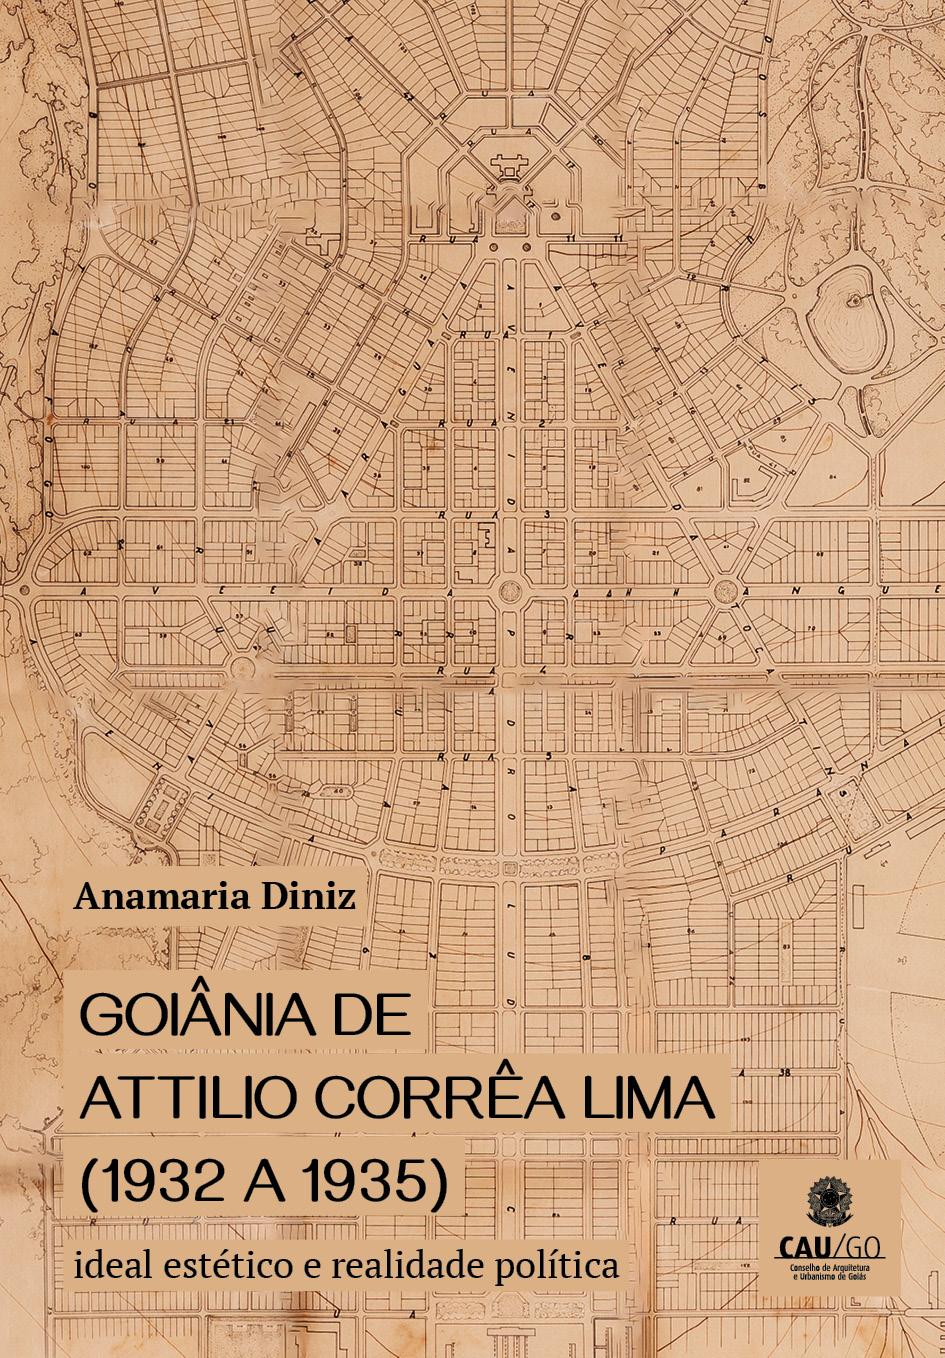 Goiânia de Attilio Corrêa Lima (1932 a 1935) – ideal estético e realidade política